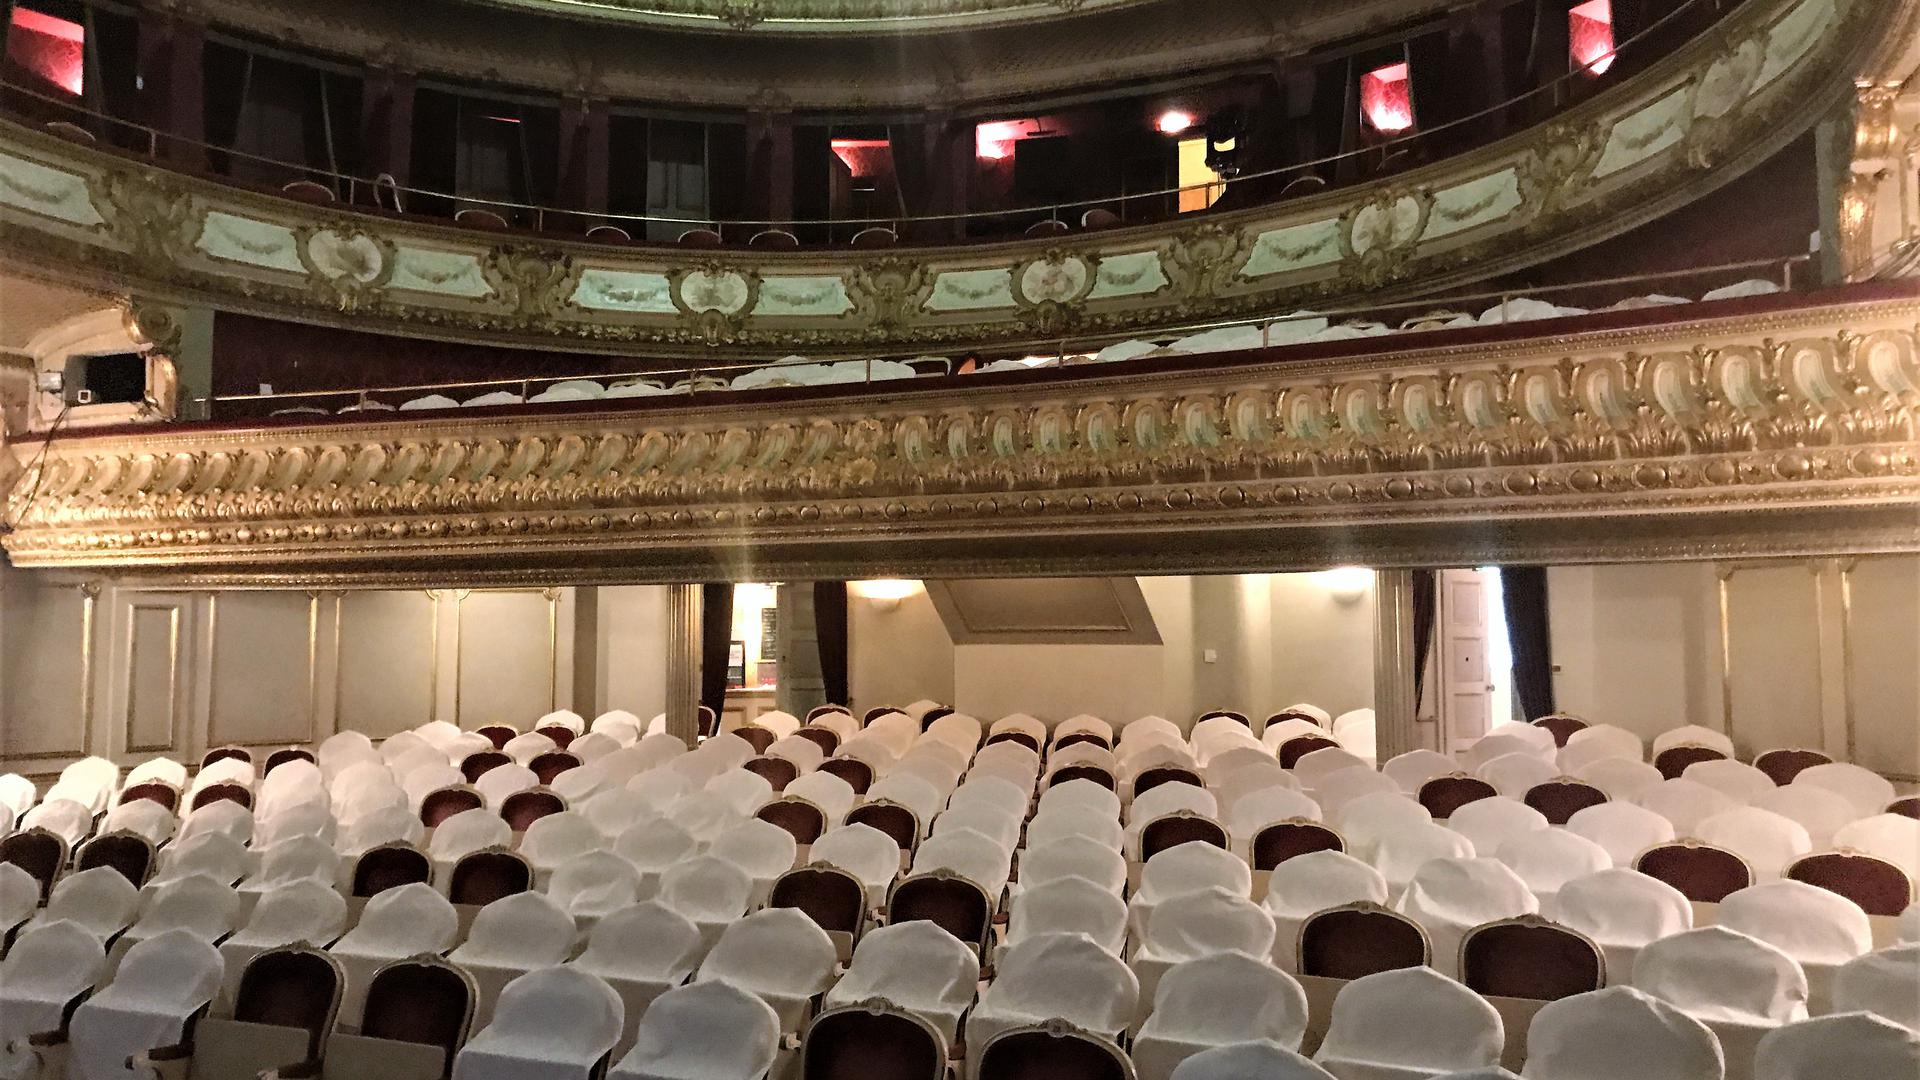 Viele Stühle im Zuschauerraum des Theaters Baden-Baden tragen weiße Hussen. Diese Plätze müssen leer bleiben.